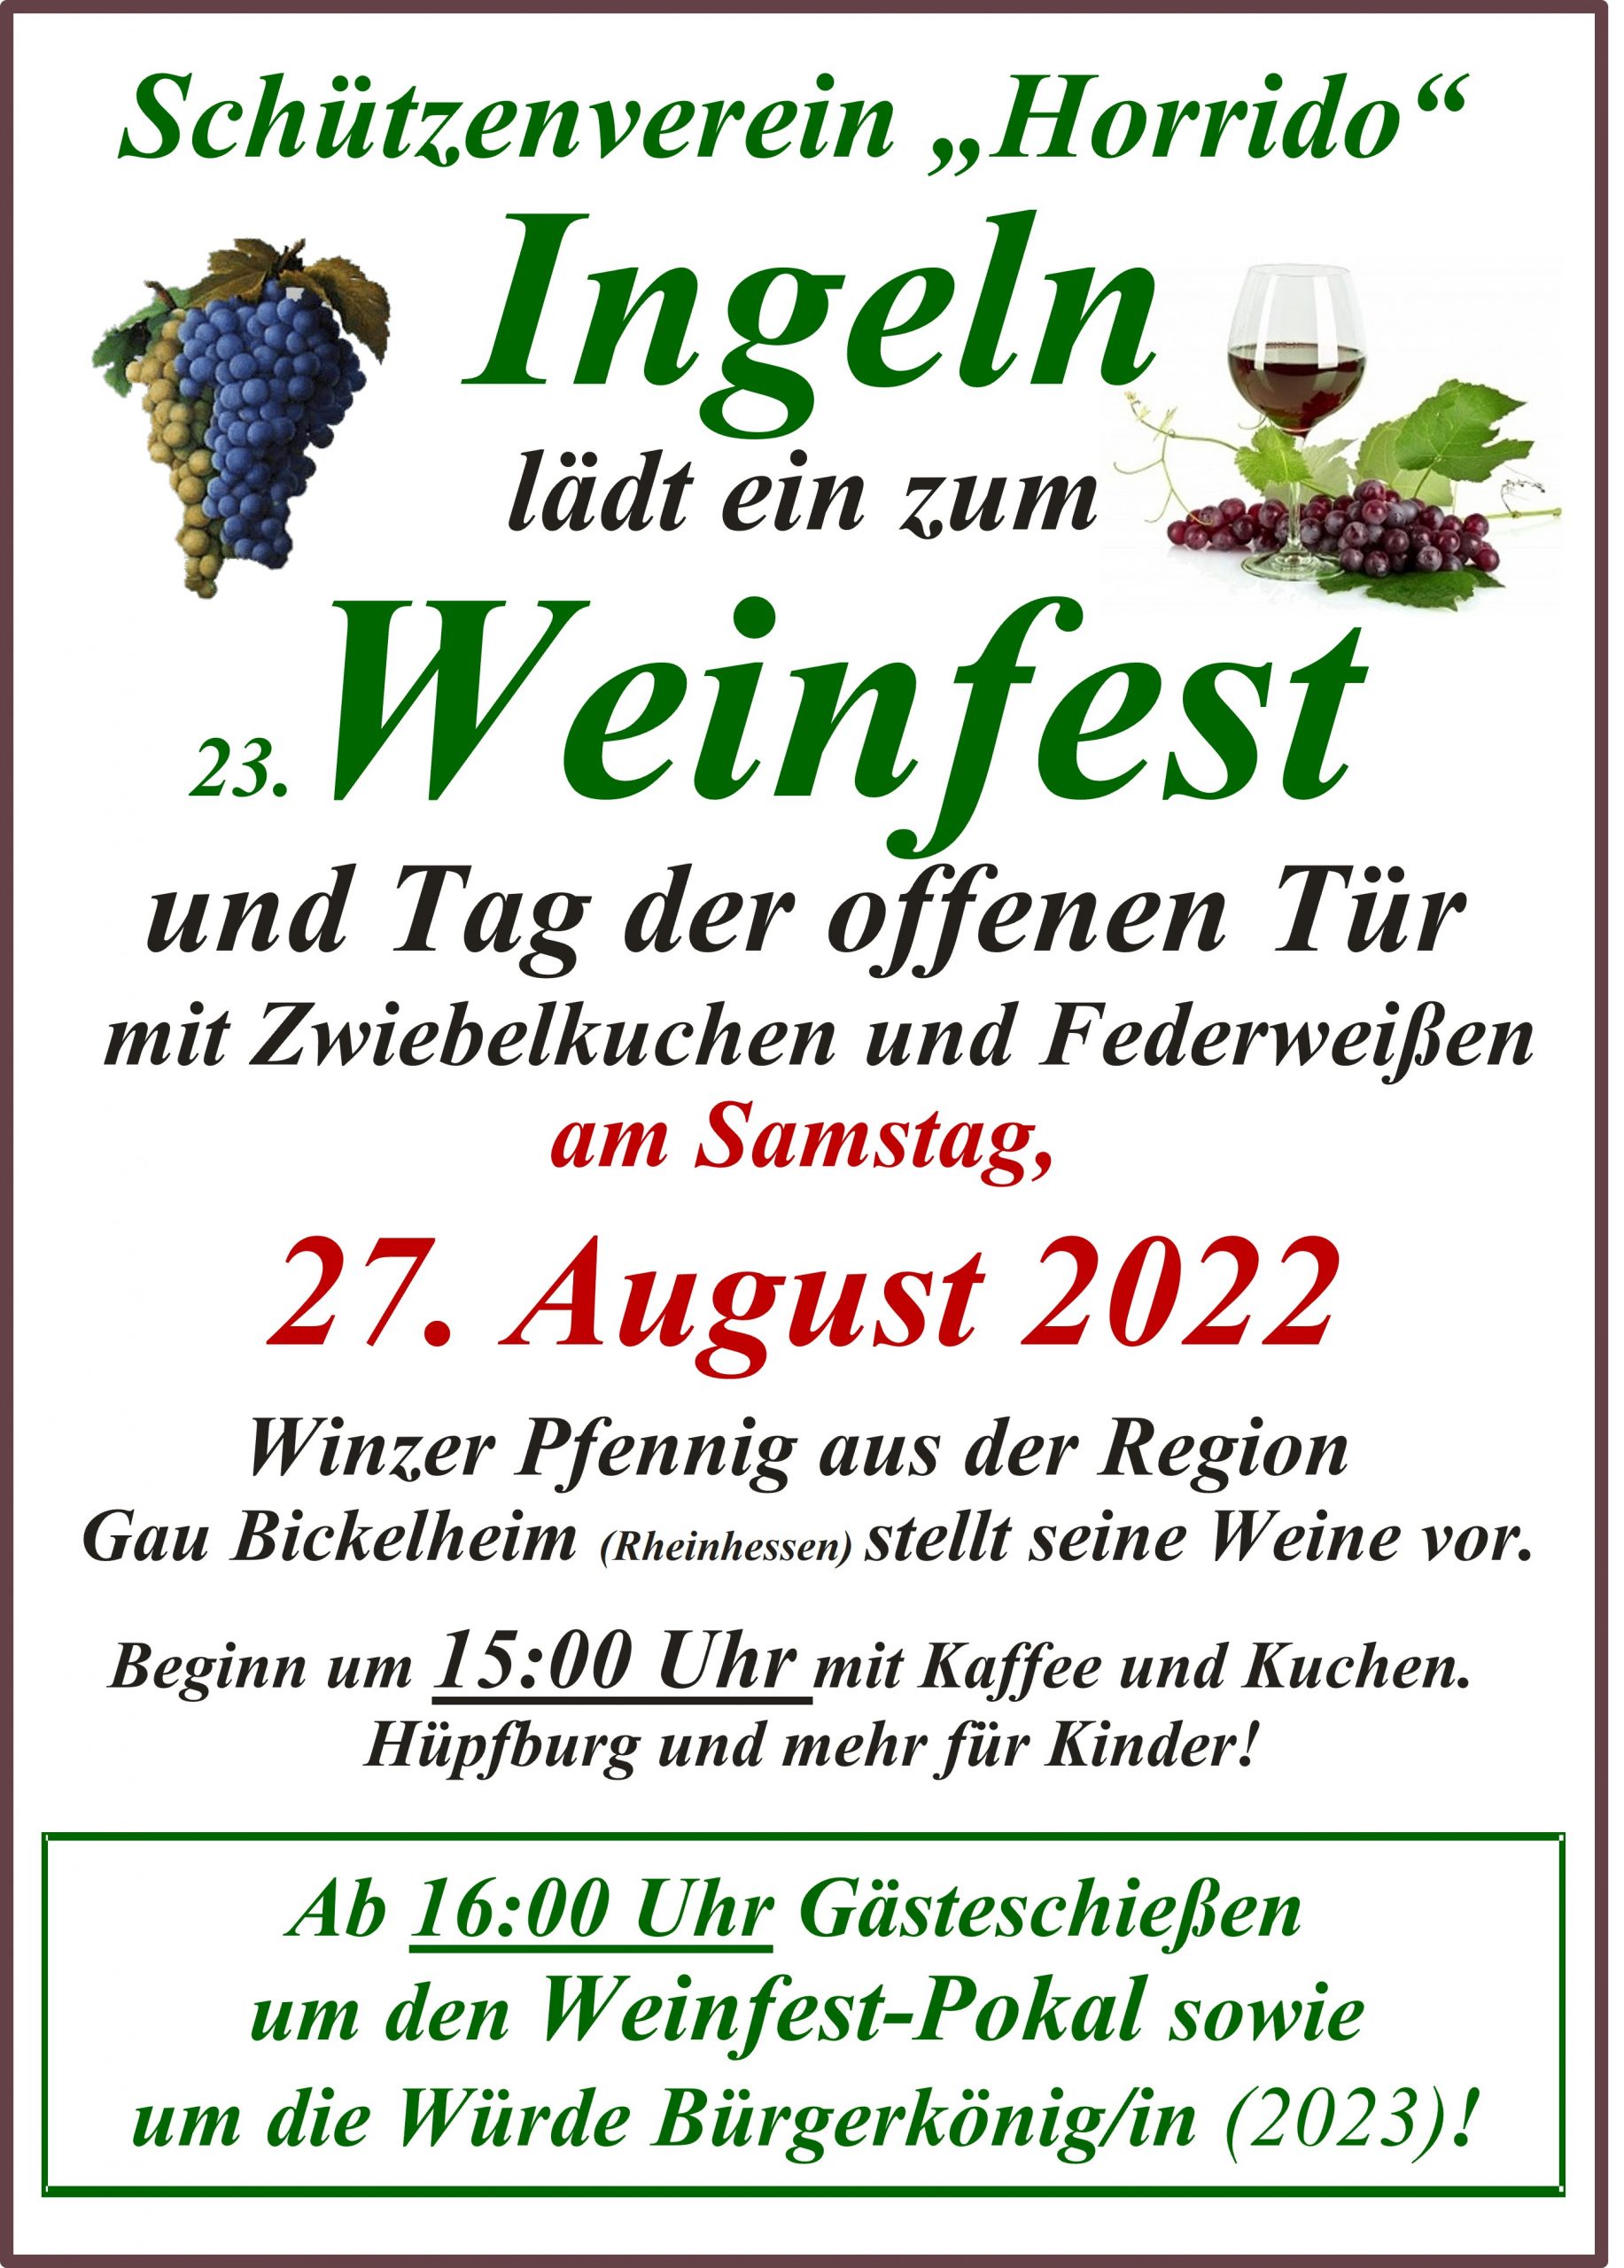 Ingeln lädt zum 23. Weinfest und Tag der offenen Tür am 27.08.2022 ein - ab 16:00 Uhr Gästeschießen.